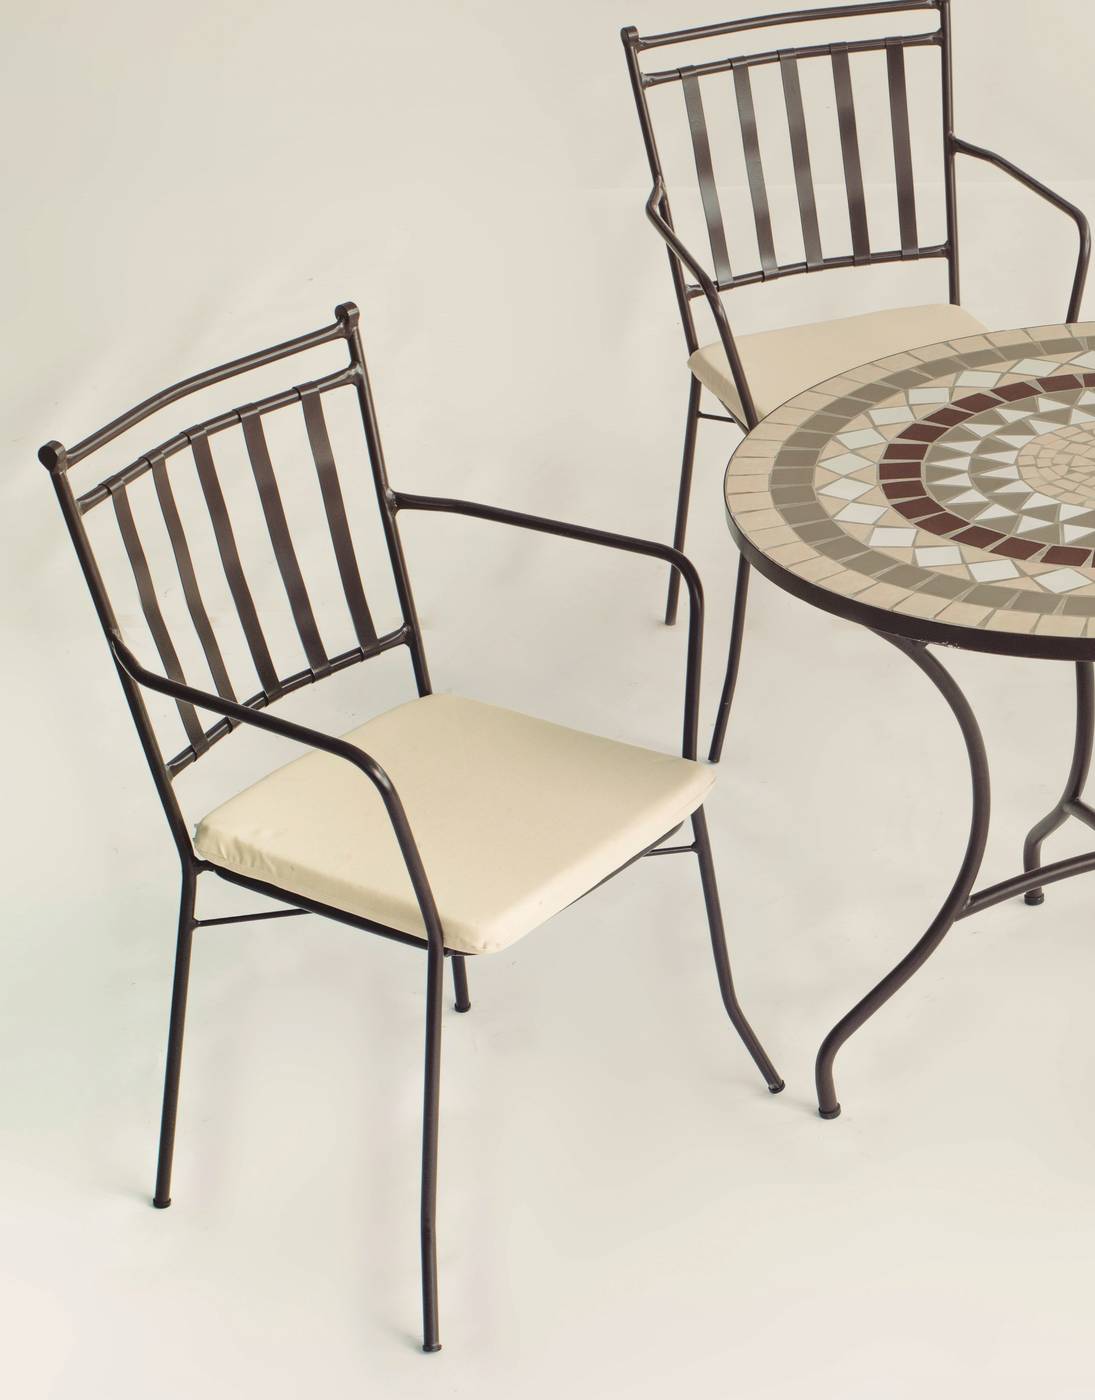 Conjunto Mosaico Laredo-Shifa - Conjunto de forja color bronce: mesa con tablero ovalado mosaico de 150 cm + 4 sillones con cojines.